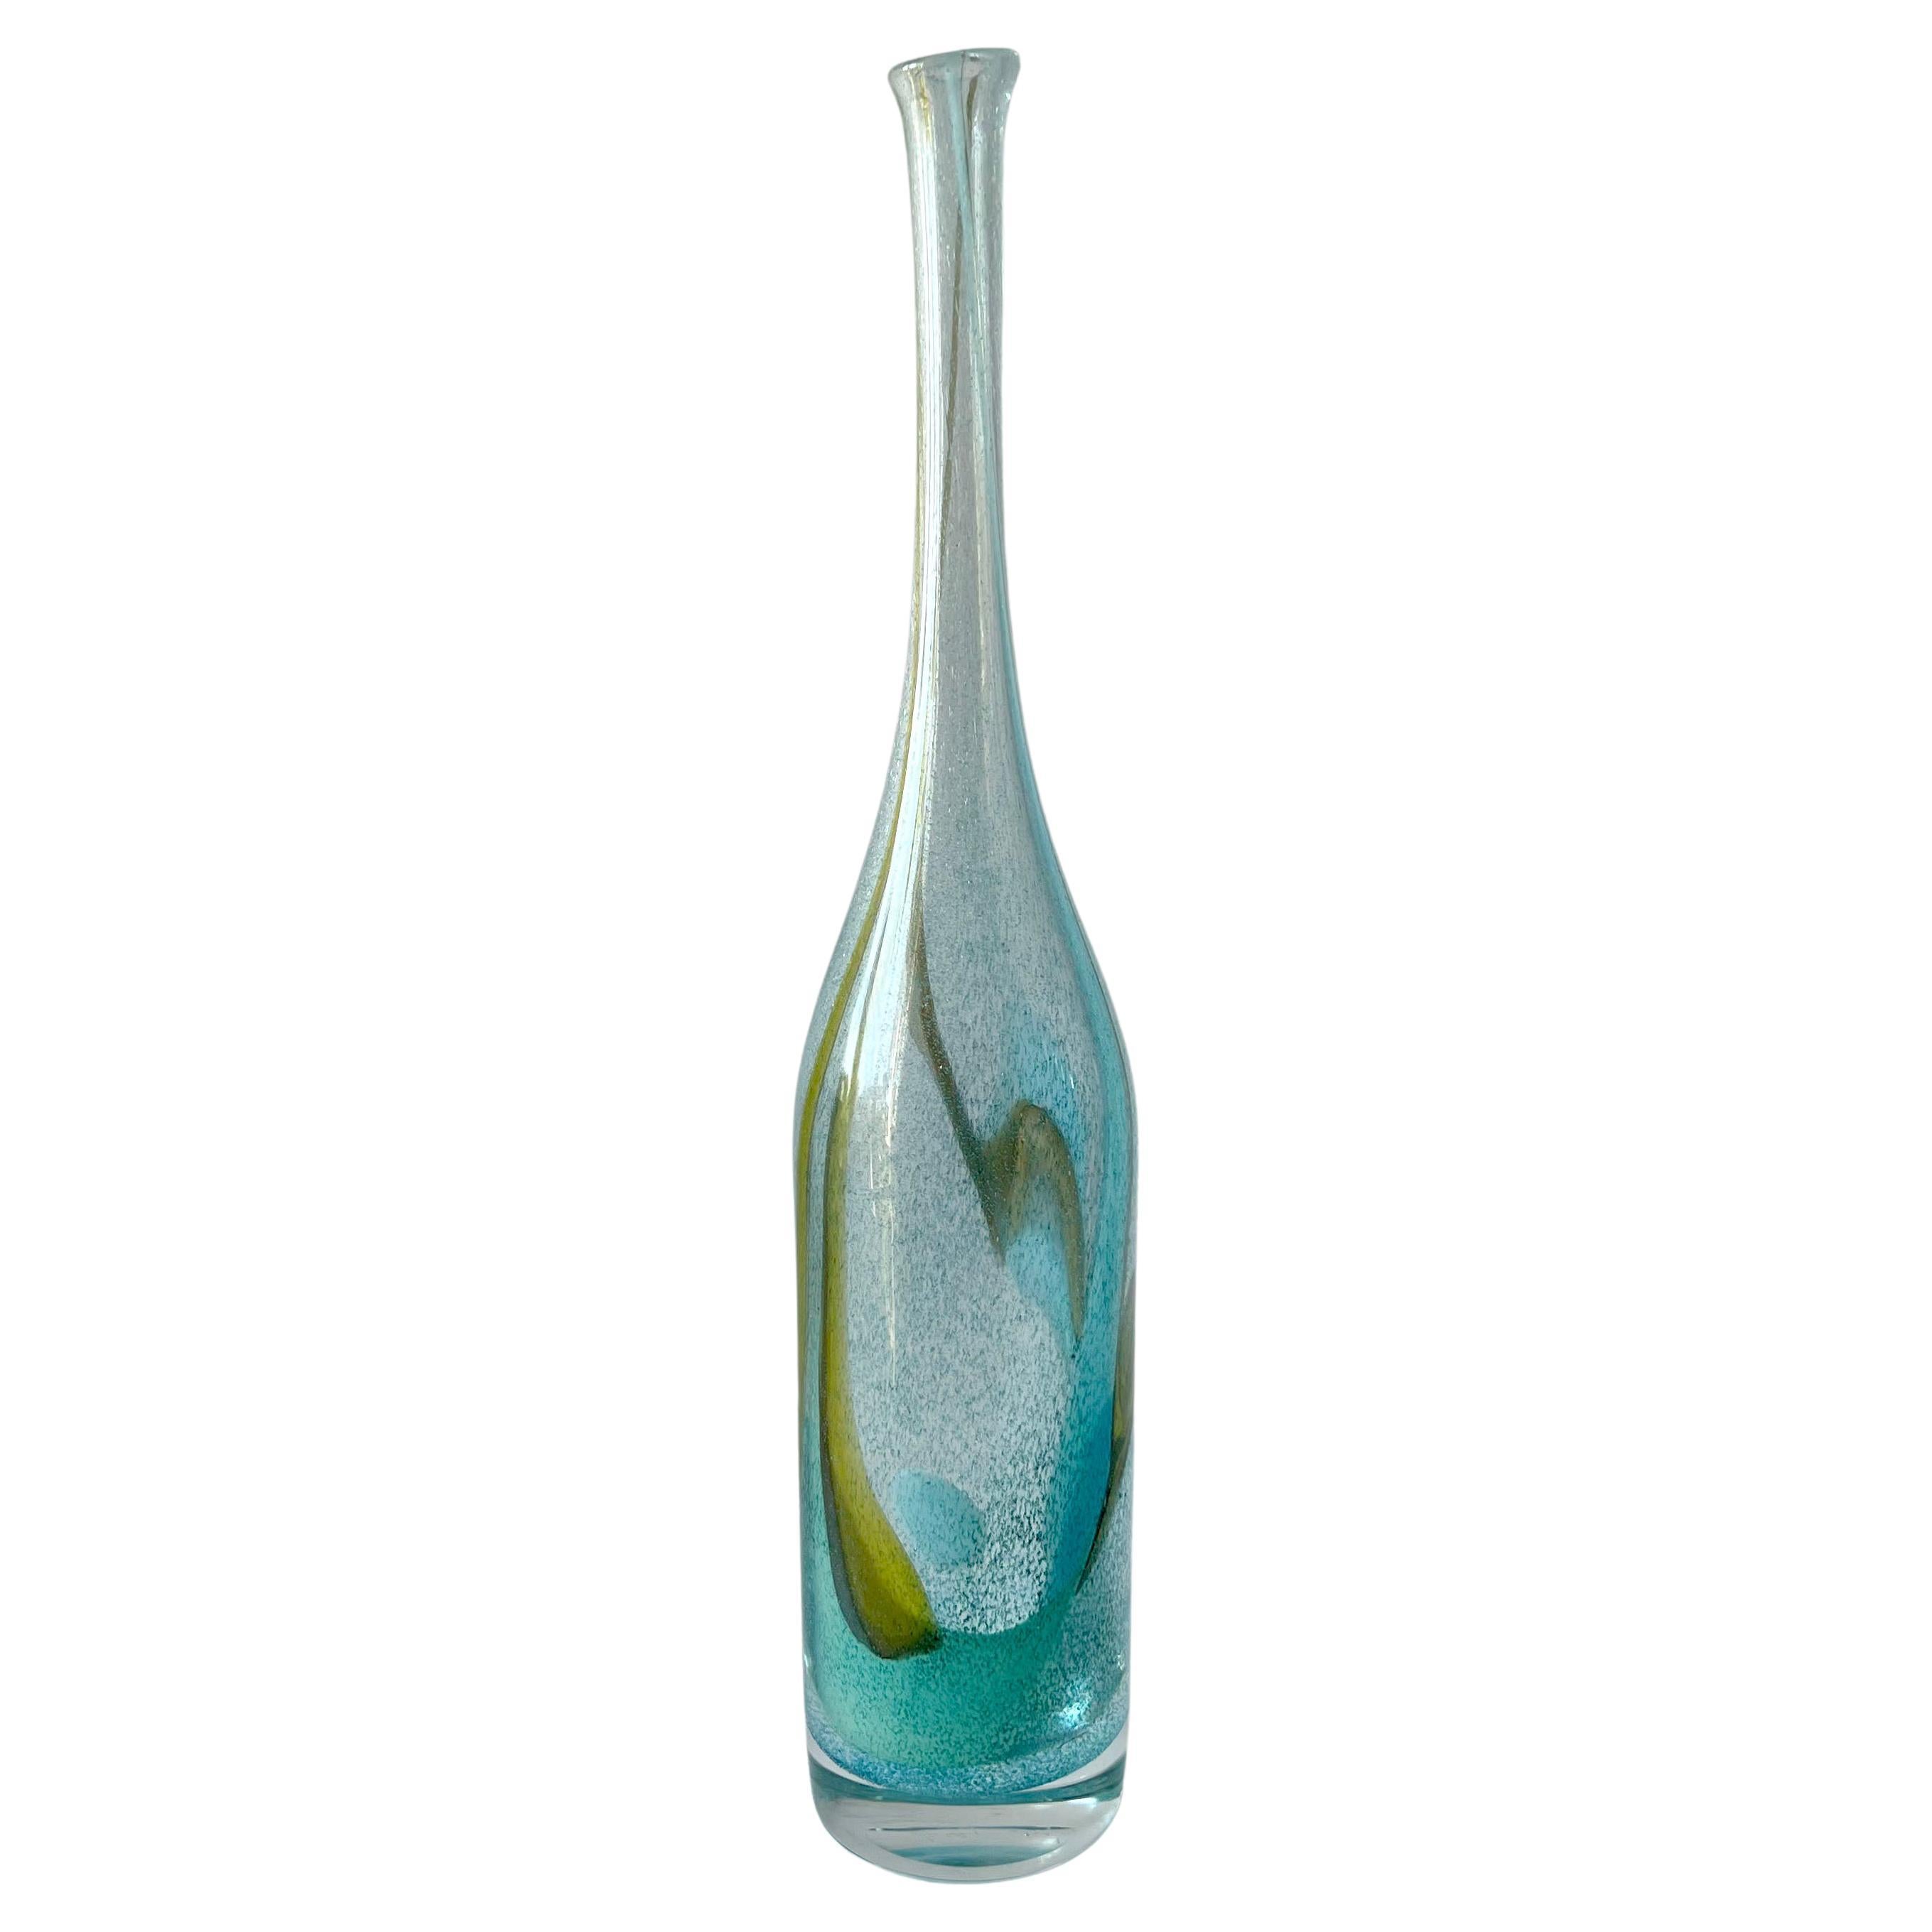 Bengt Orup for Johansfors Swedish Modernist Blown Glass Bottle Vase